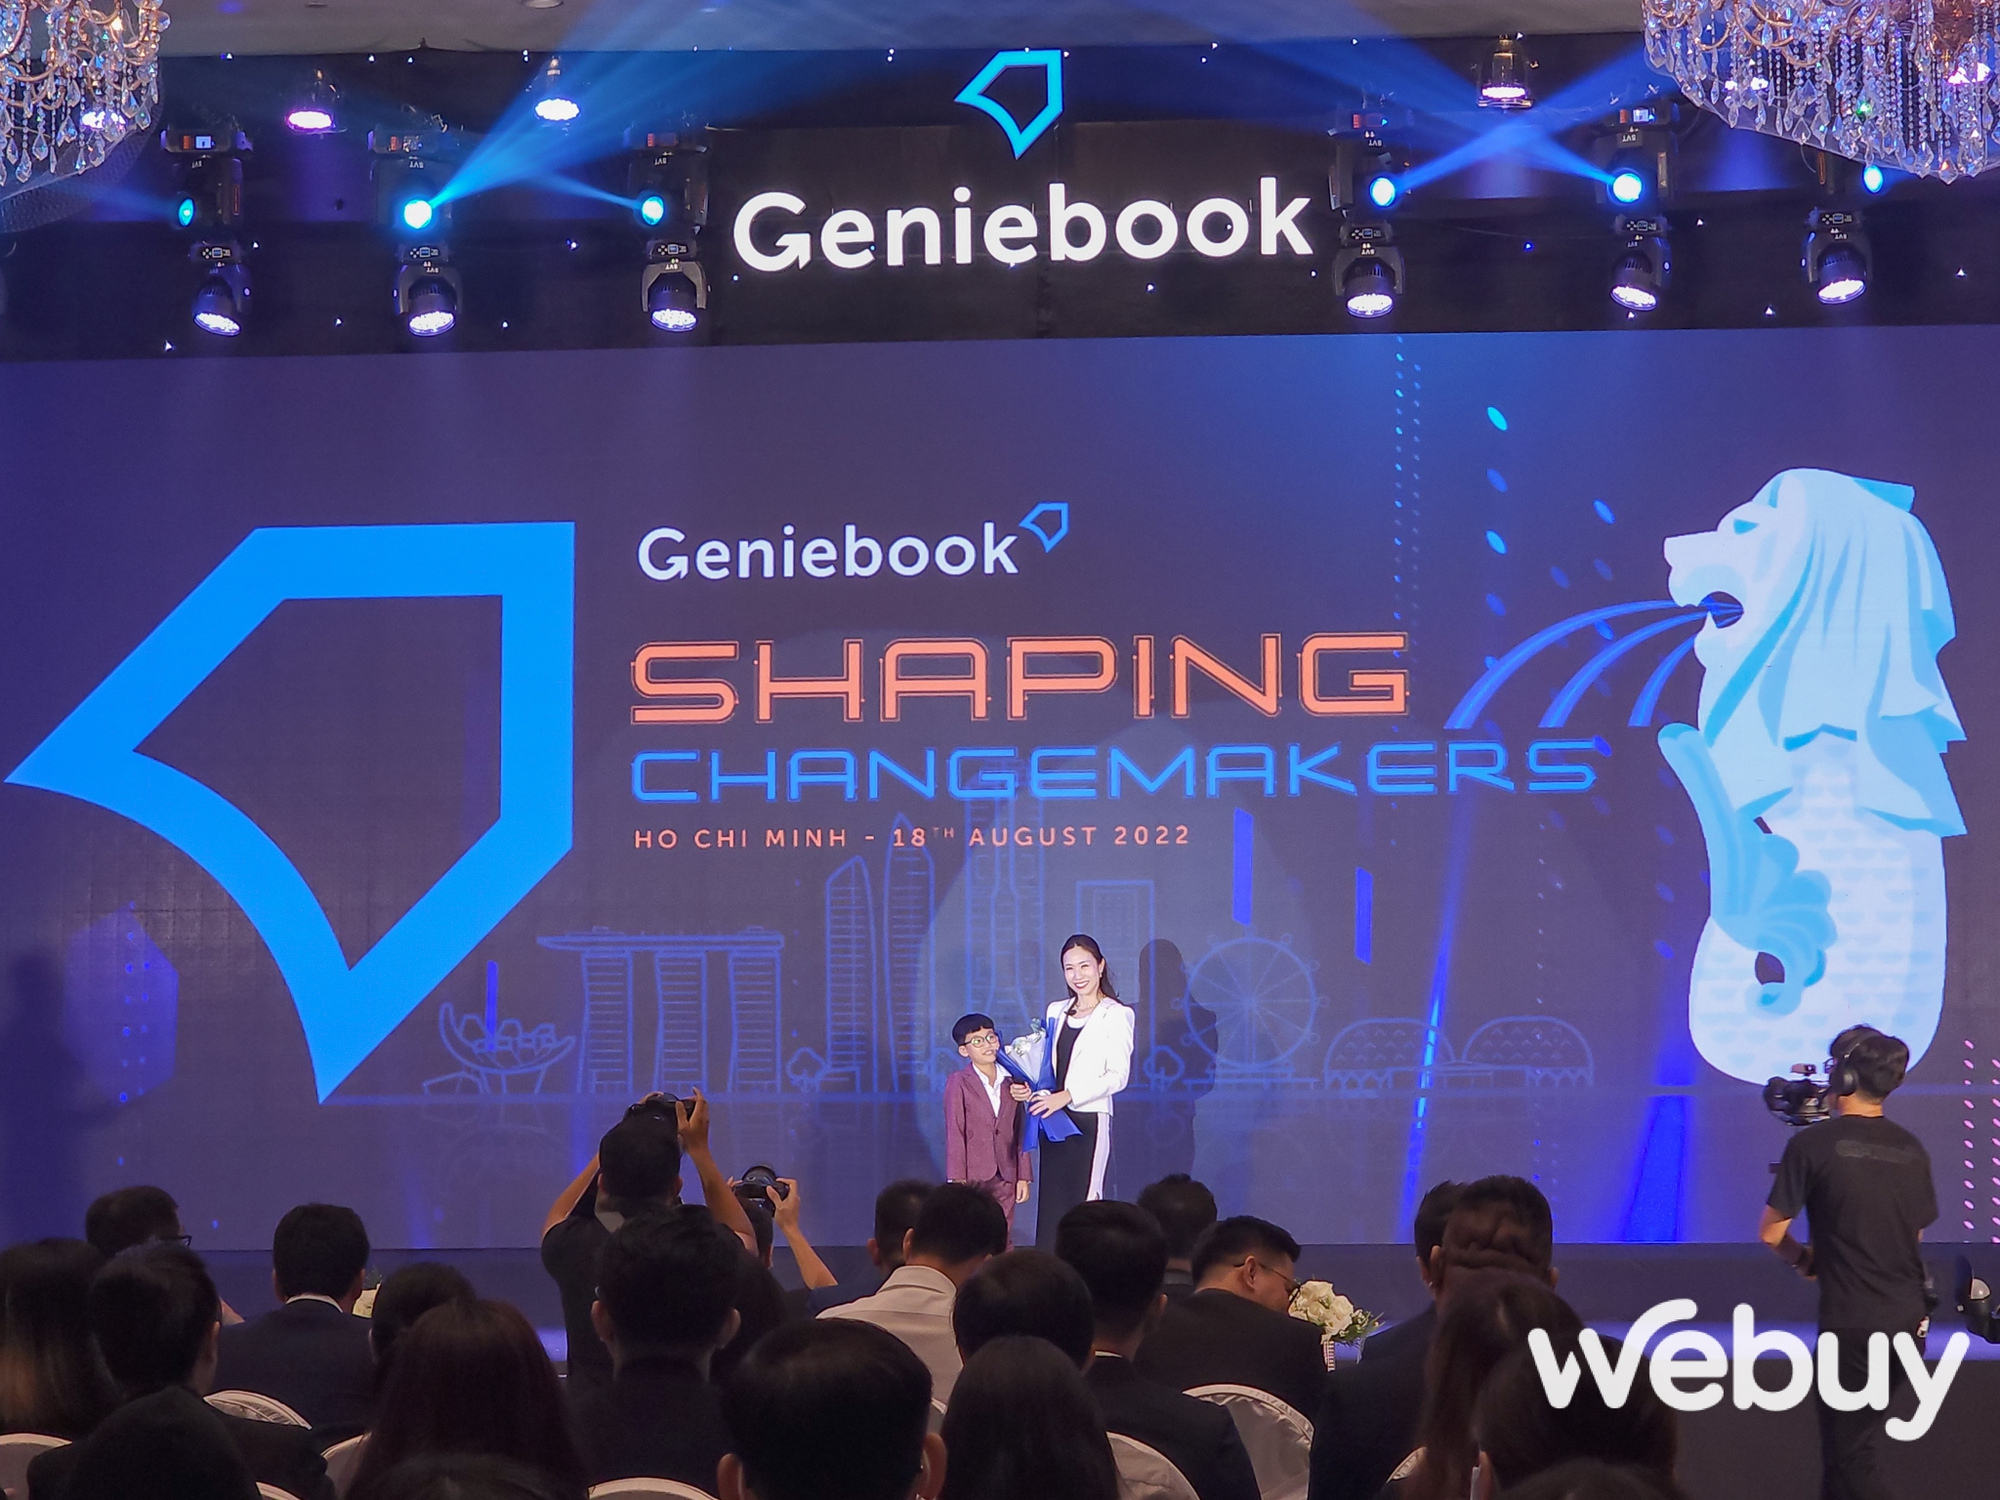 Nền tảng giáo dục sử dụng công nghệ AI Geniebook chính thức mở rộng hoạt động tại Việt Nam - Ảnh 1.